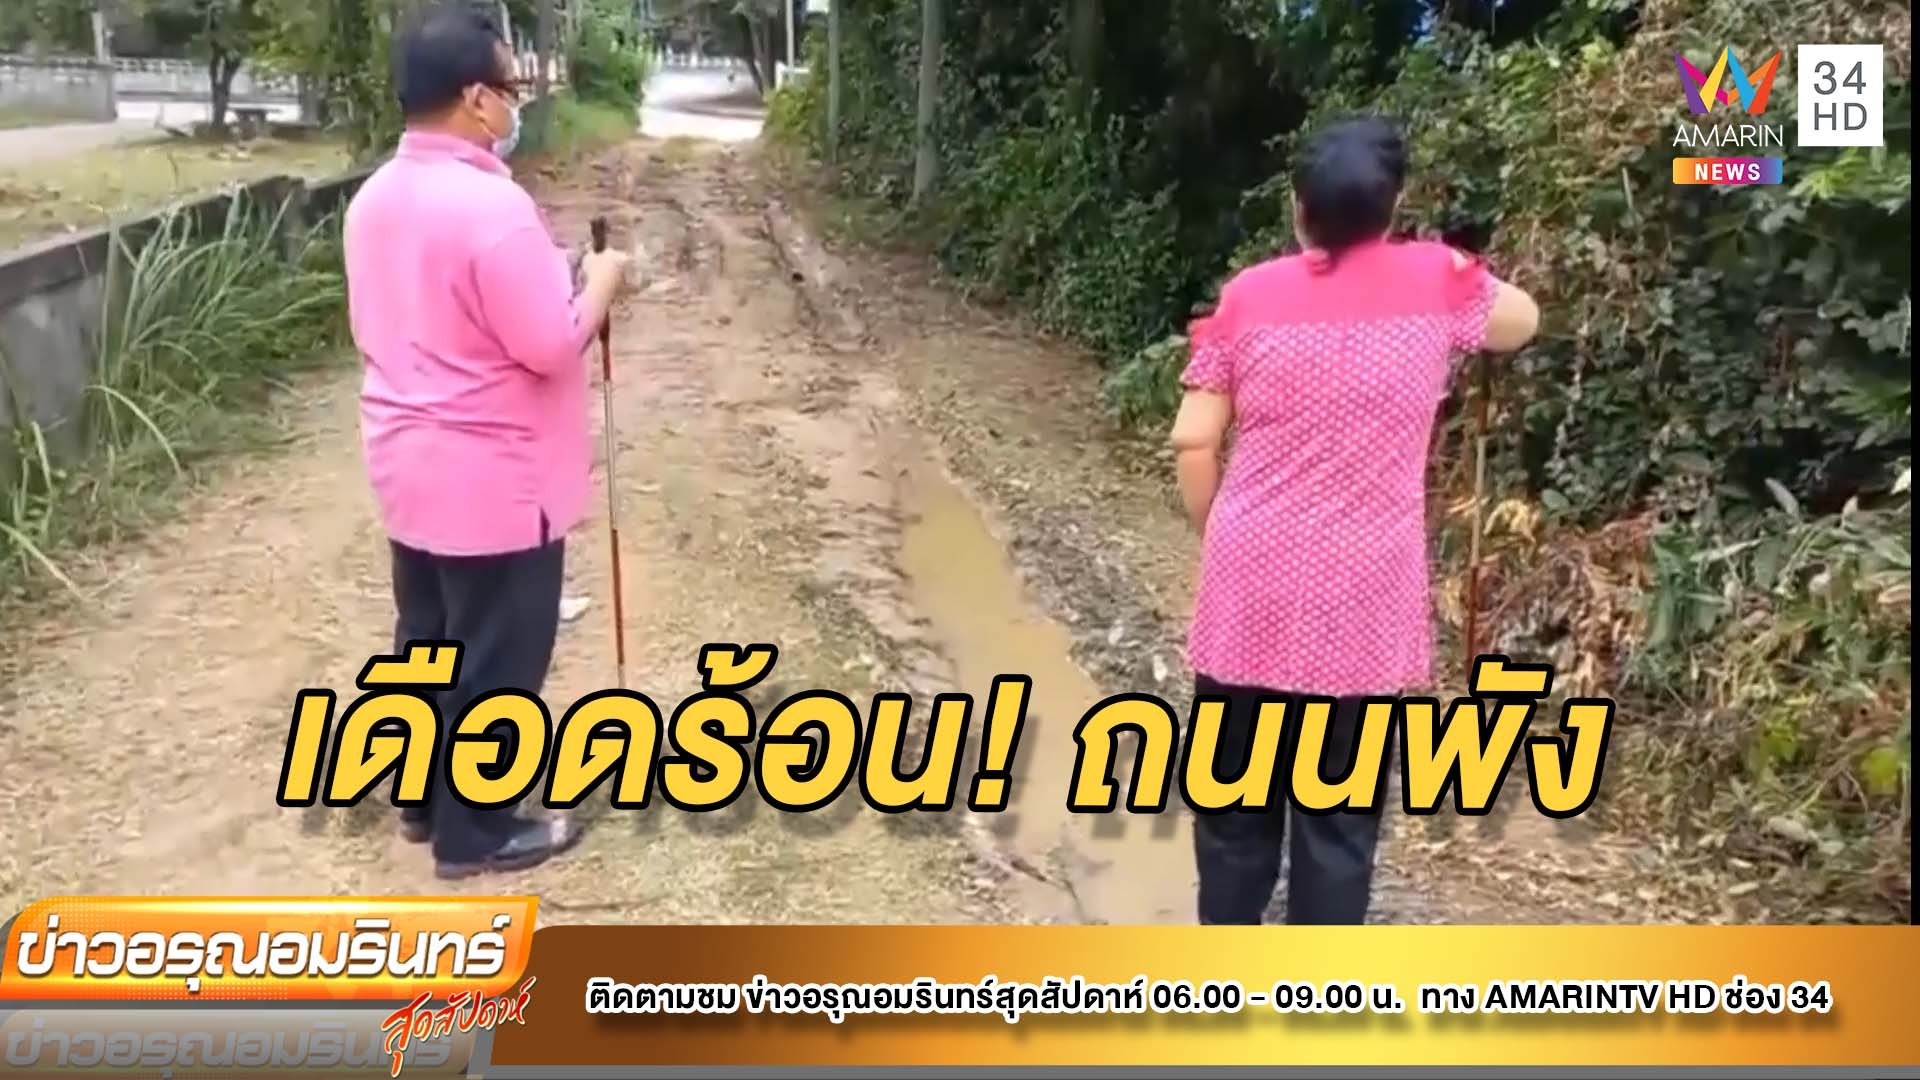 สามี-ภรรยาพิการ เดือดร้อนหนัก ถนนเข้าบ้านพัง  | ข่าวอรุณอมรินทร์ | 22 ส.ค. 64 | AMARIN TVHD34